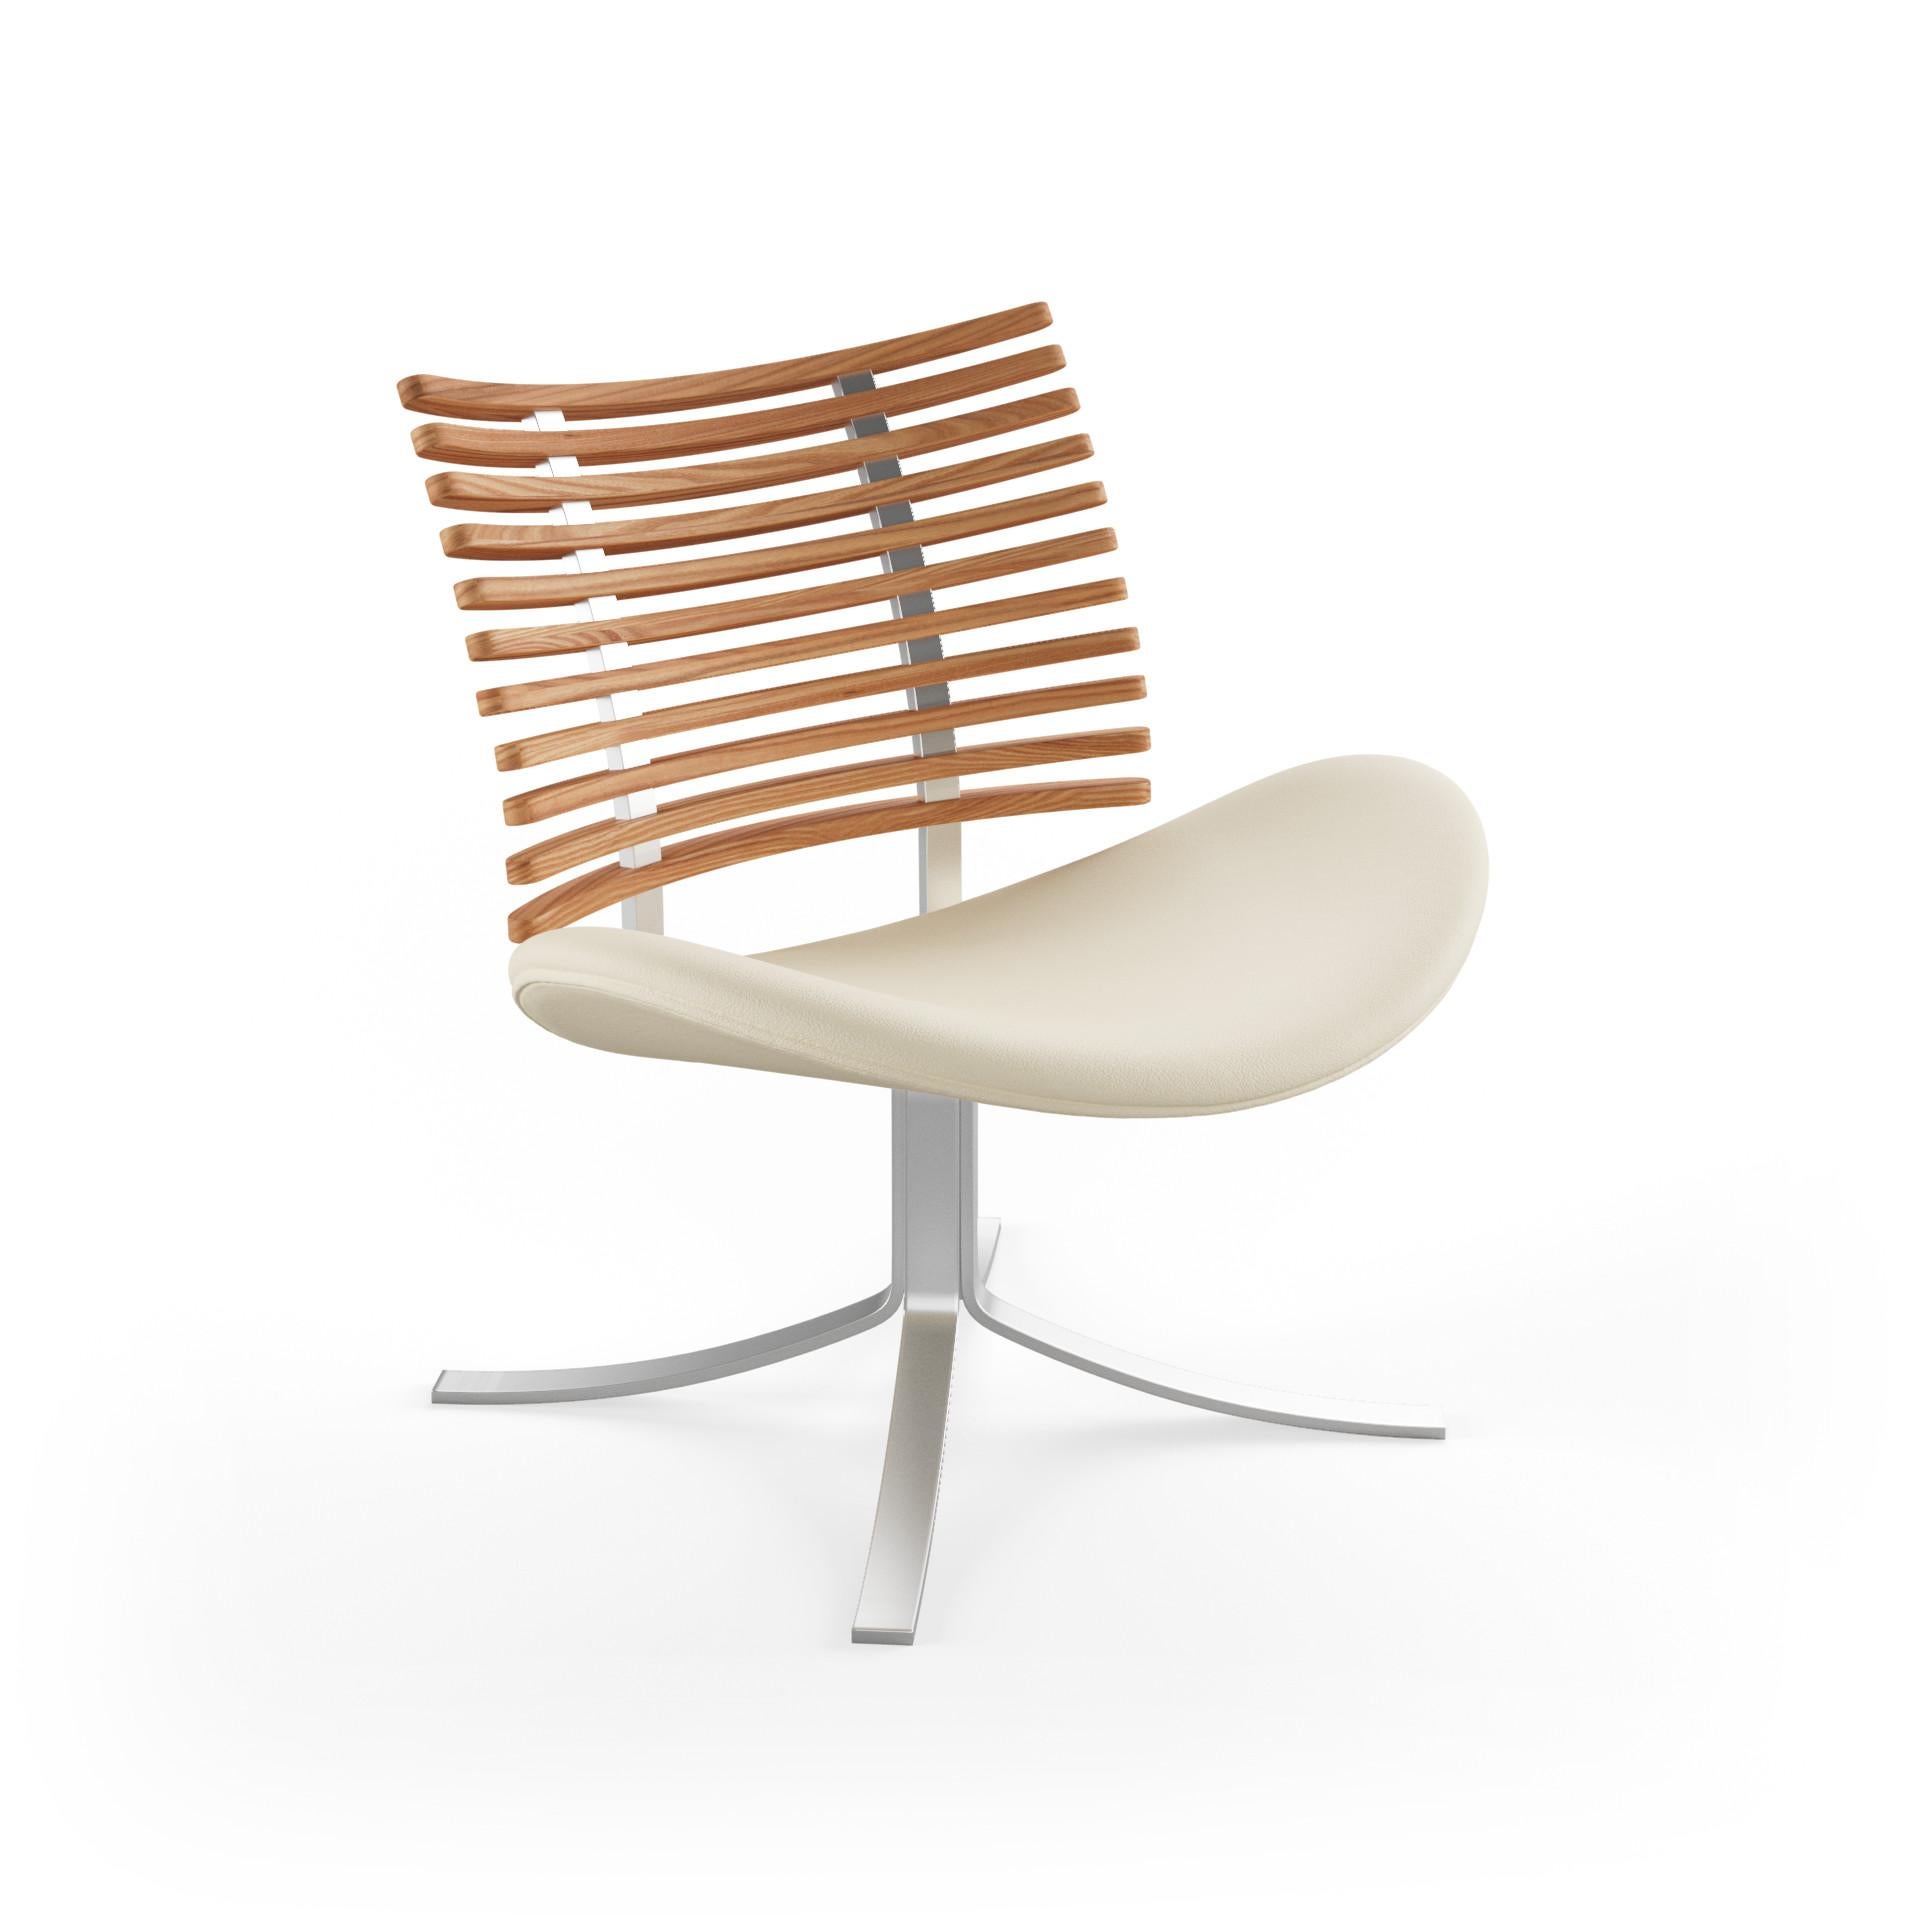 Henrik Lehm a refusé tout compromis en matière de confort ou d'expression lorsqu'il a conçu l'élégante chaise longue Gepard.

Le confort, l'élégance et la finesse sont les mots clés pour décrire le membre le plus en retrait de notre collection, le